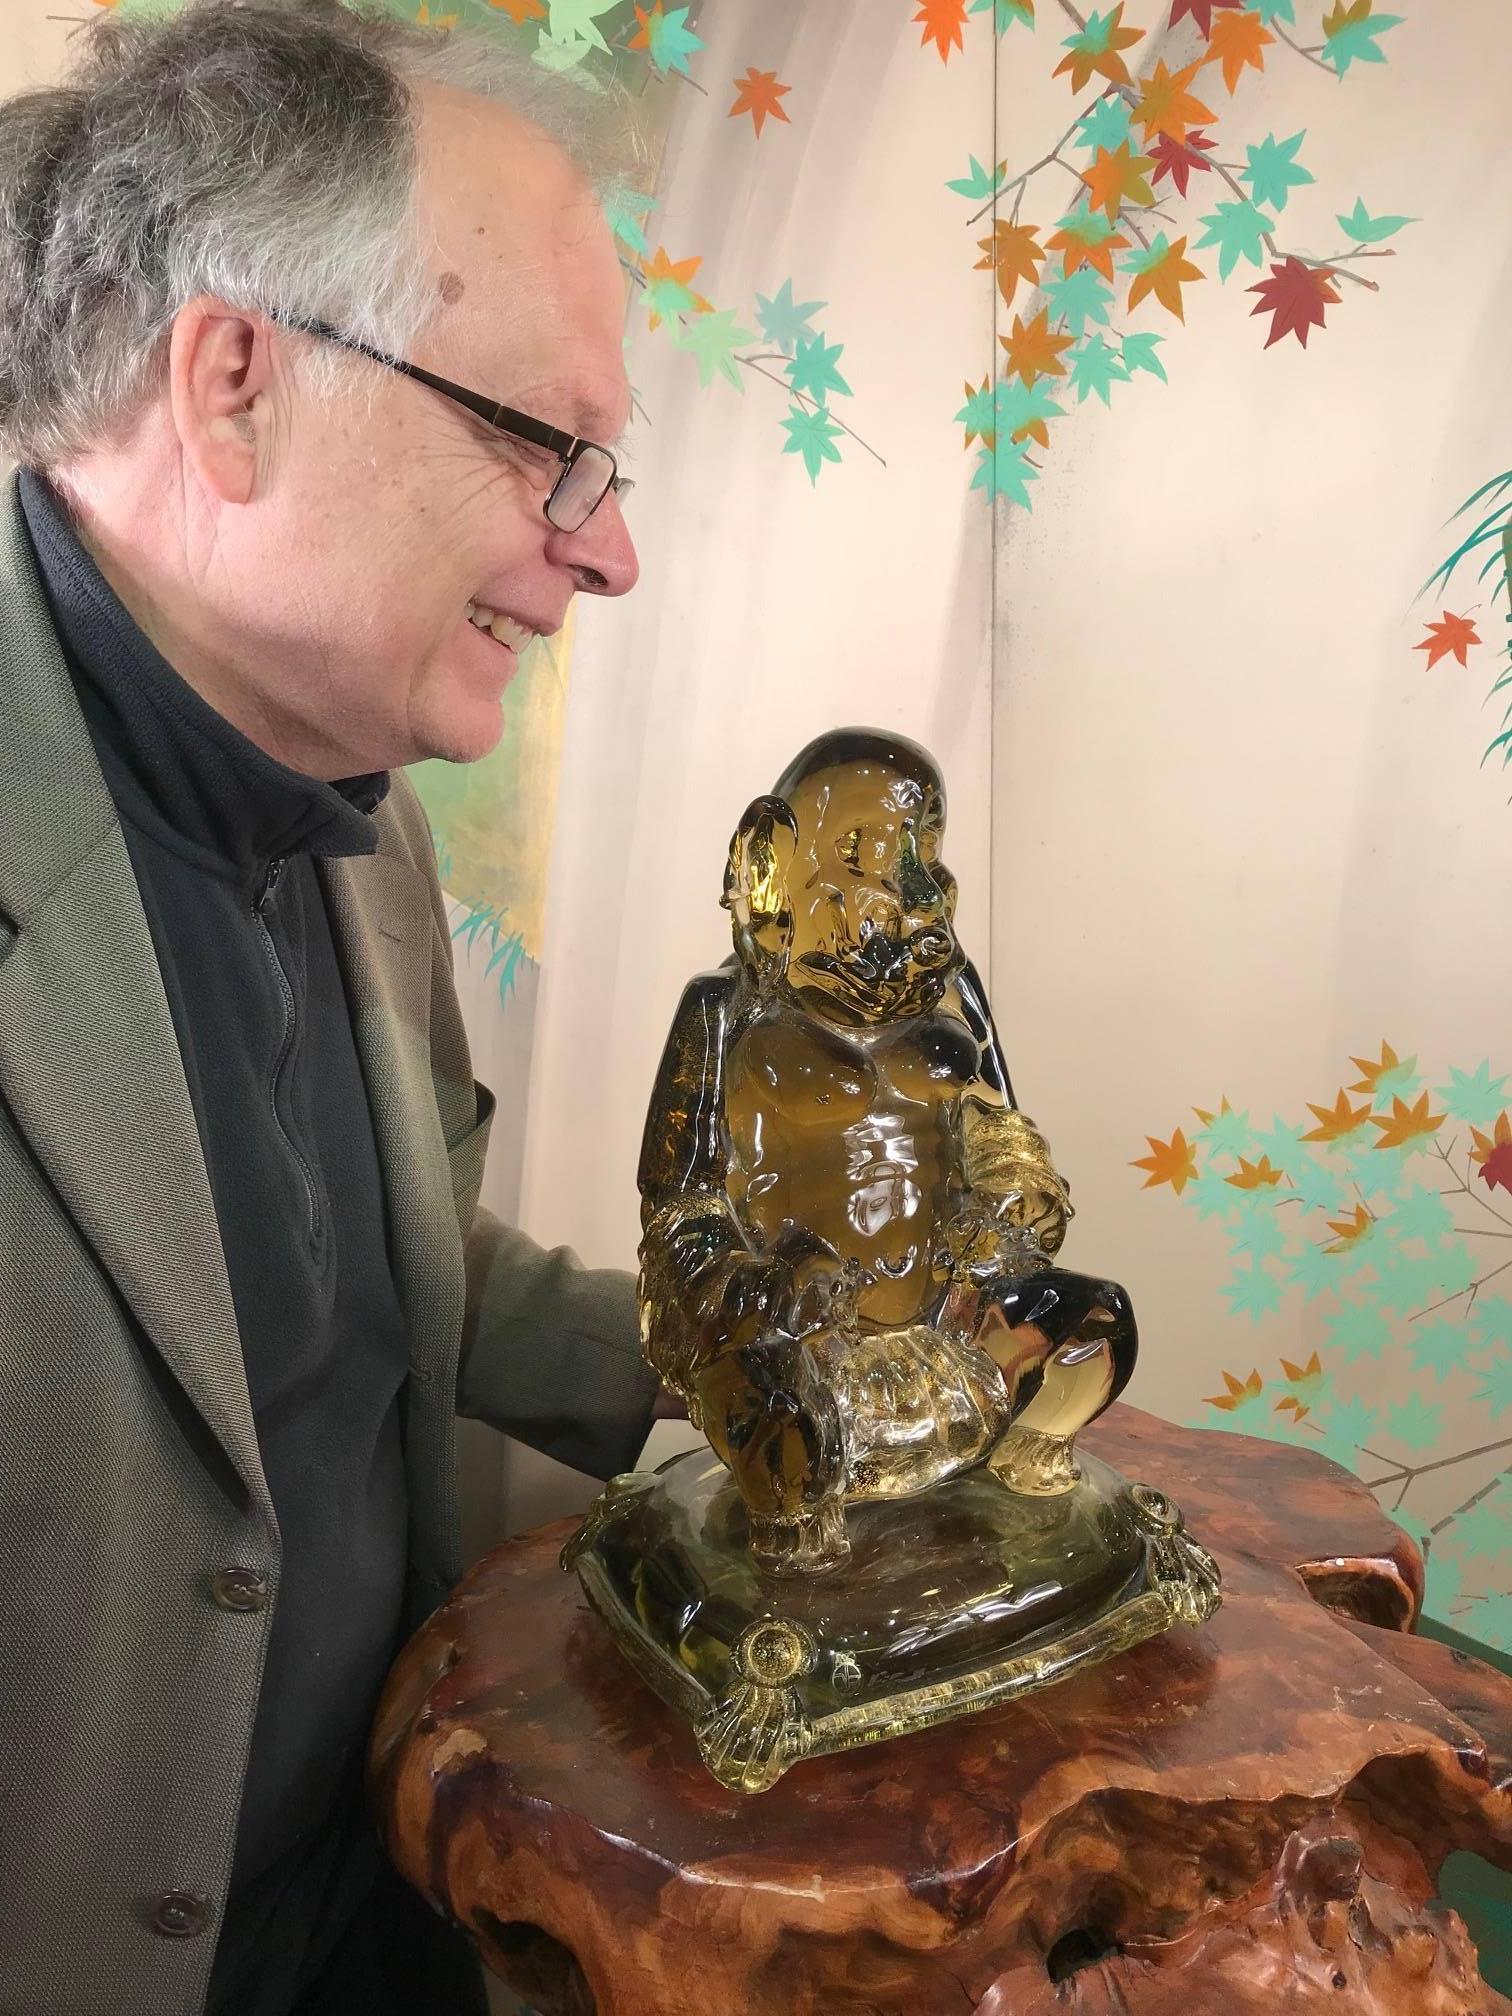 Einzigartiger Meditationsbuddha in Einzelanfertigung

Aus Italien und Murano kommt dieser bezaubernde sitzende Buddha aus massivem mundgeblasenem Glas in großem Format.

Es handelt sich um eine seltene, einzigartige Skulptur in Bernsteinfarbe mit